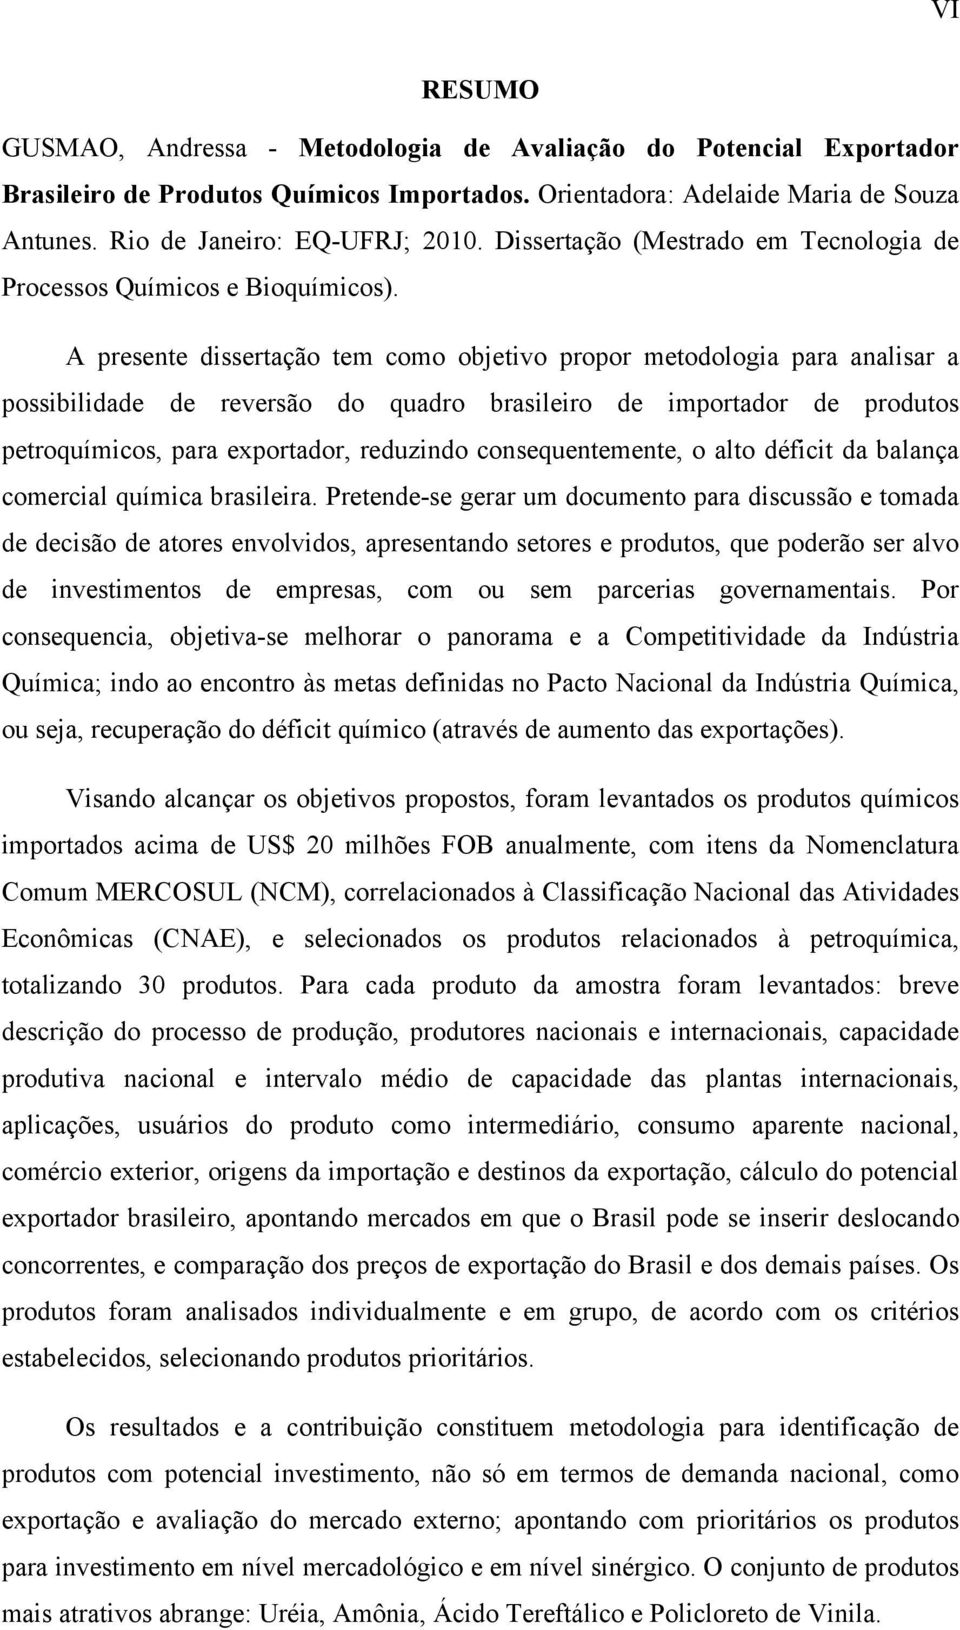 A presente dissertação tem como objetivo propor metodologia para analisar a possibilidade de reversão do quadro brasileiro de importador de produtos petroquímicos, para exportador, reduzindo